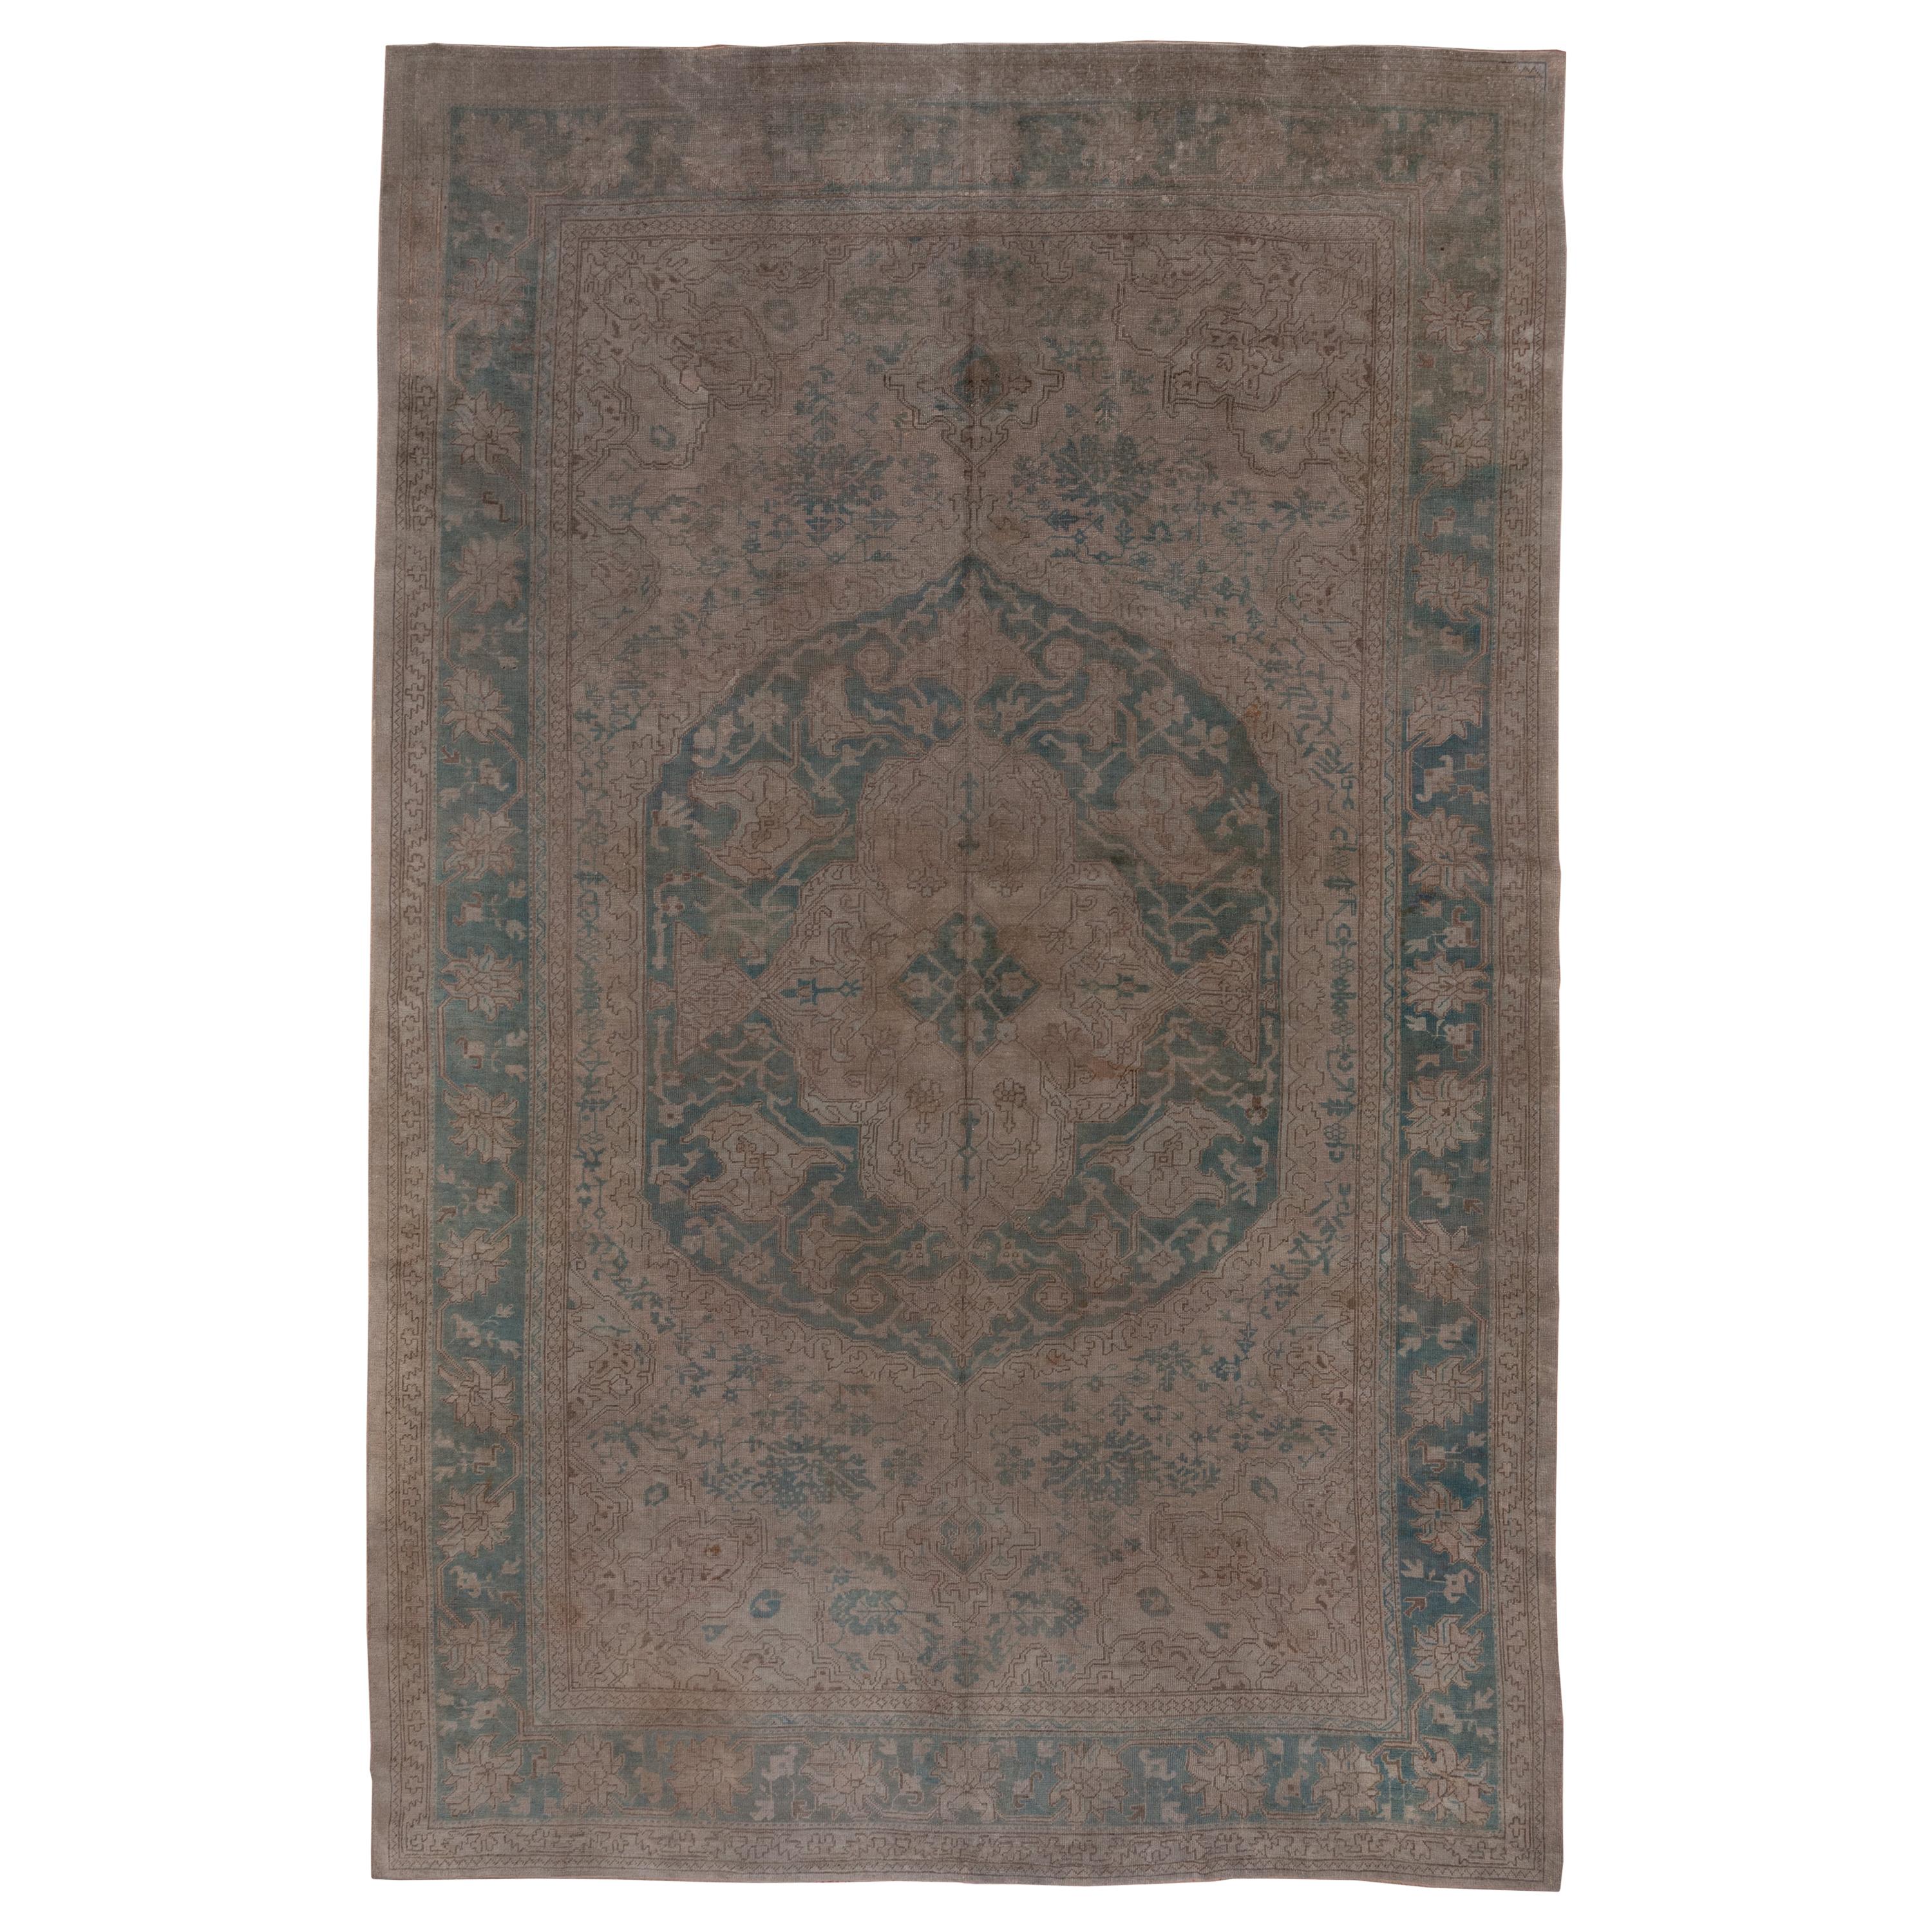 Antique Green Oushak Carpet, Circa 1910s